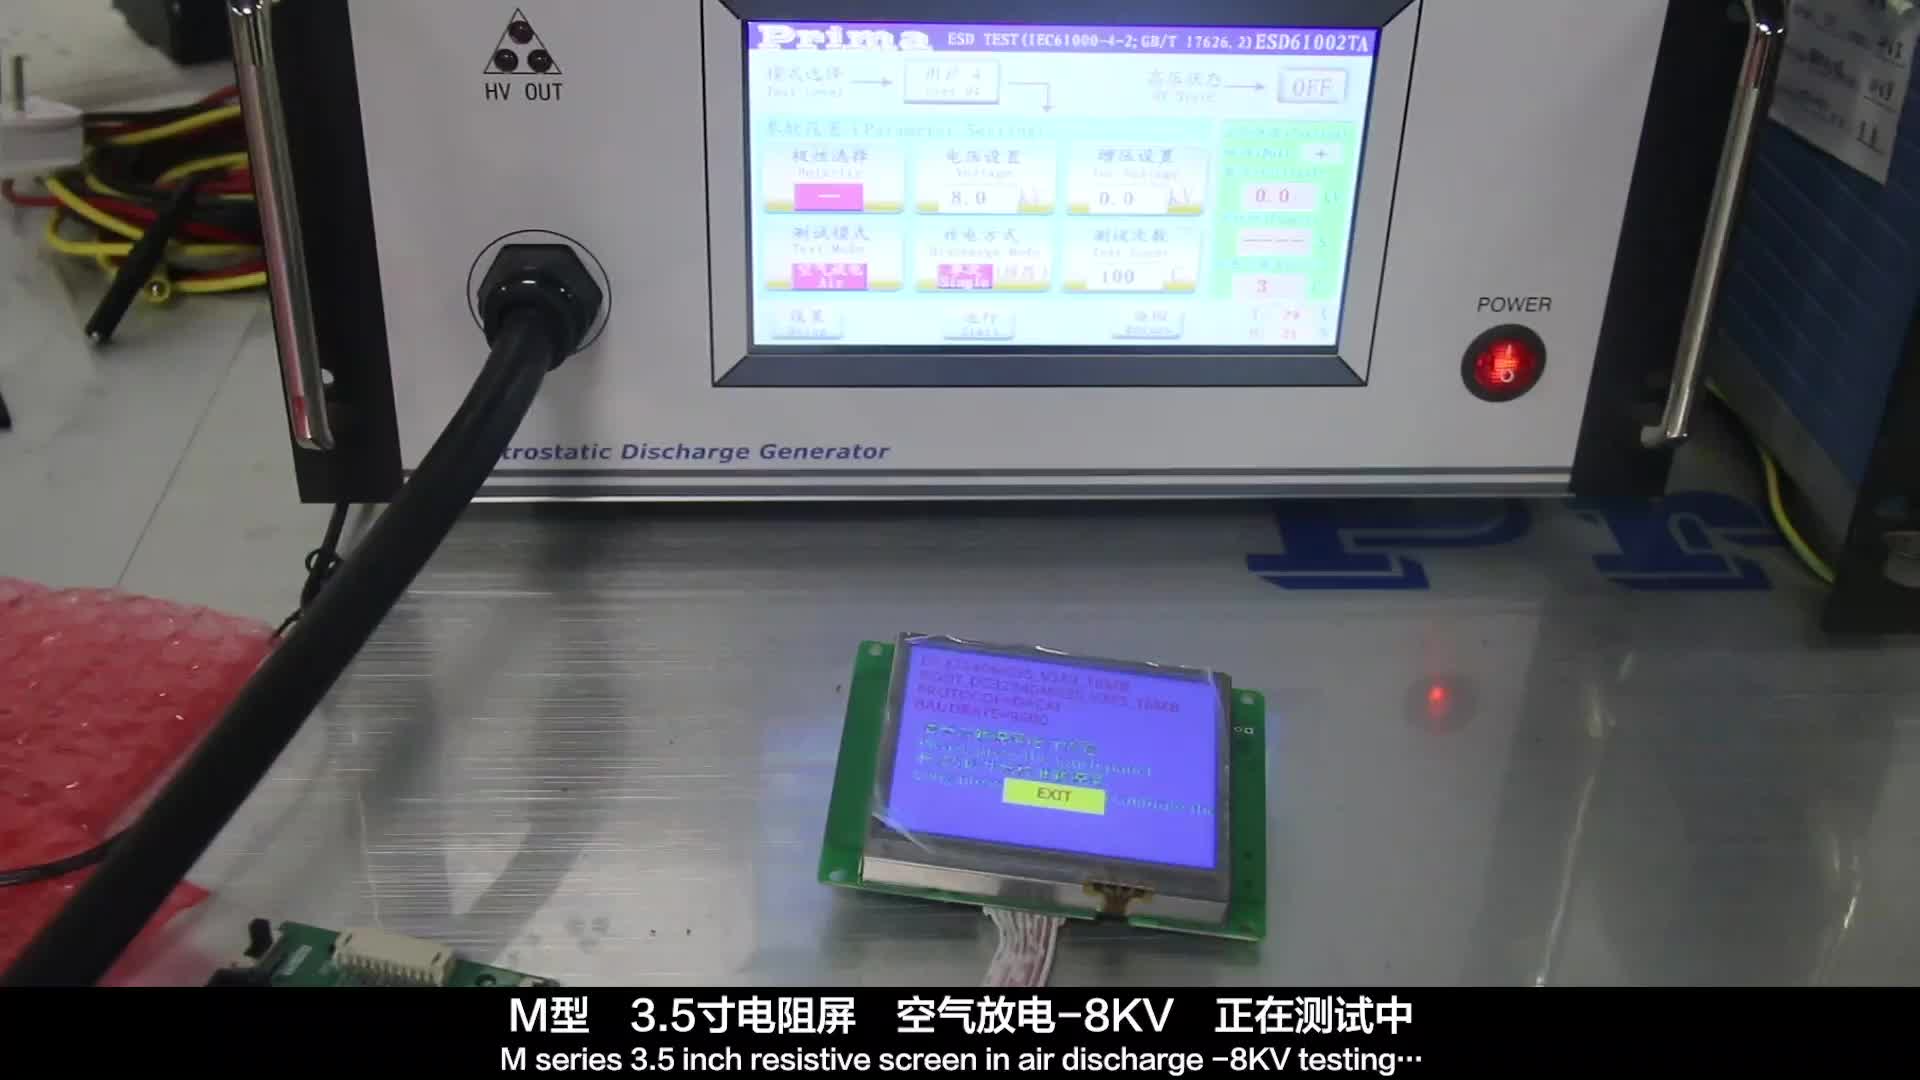 大彩串口屏M型3.5寸电阻屏 空气放电-8KV 测试视频#寻找100+国产半导体厂家 #硬声创作季 